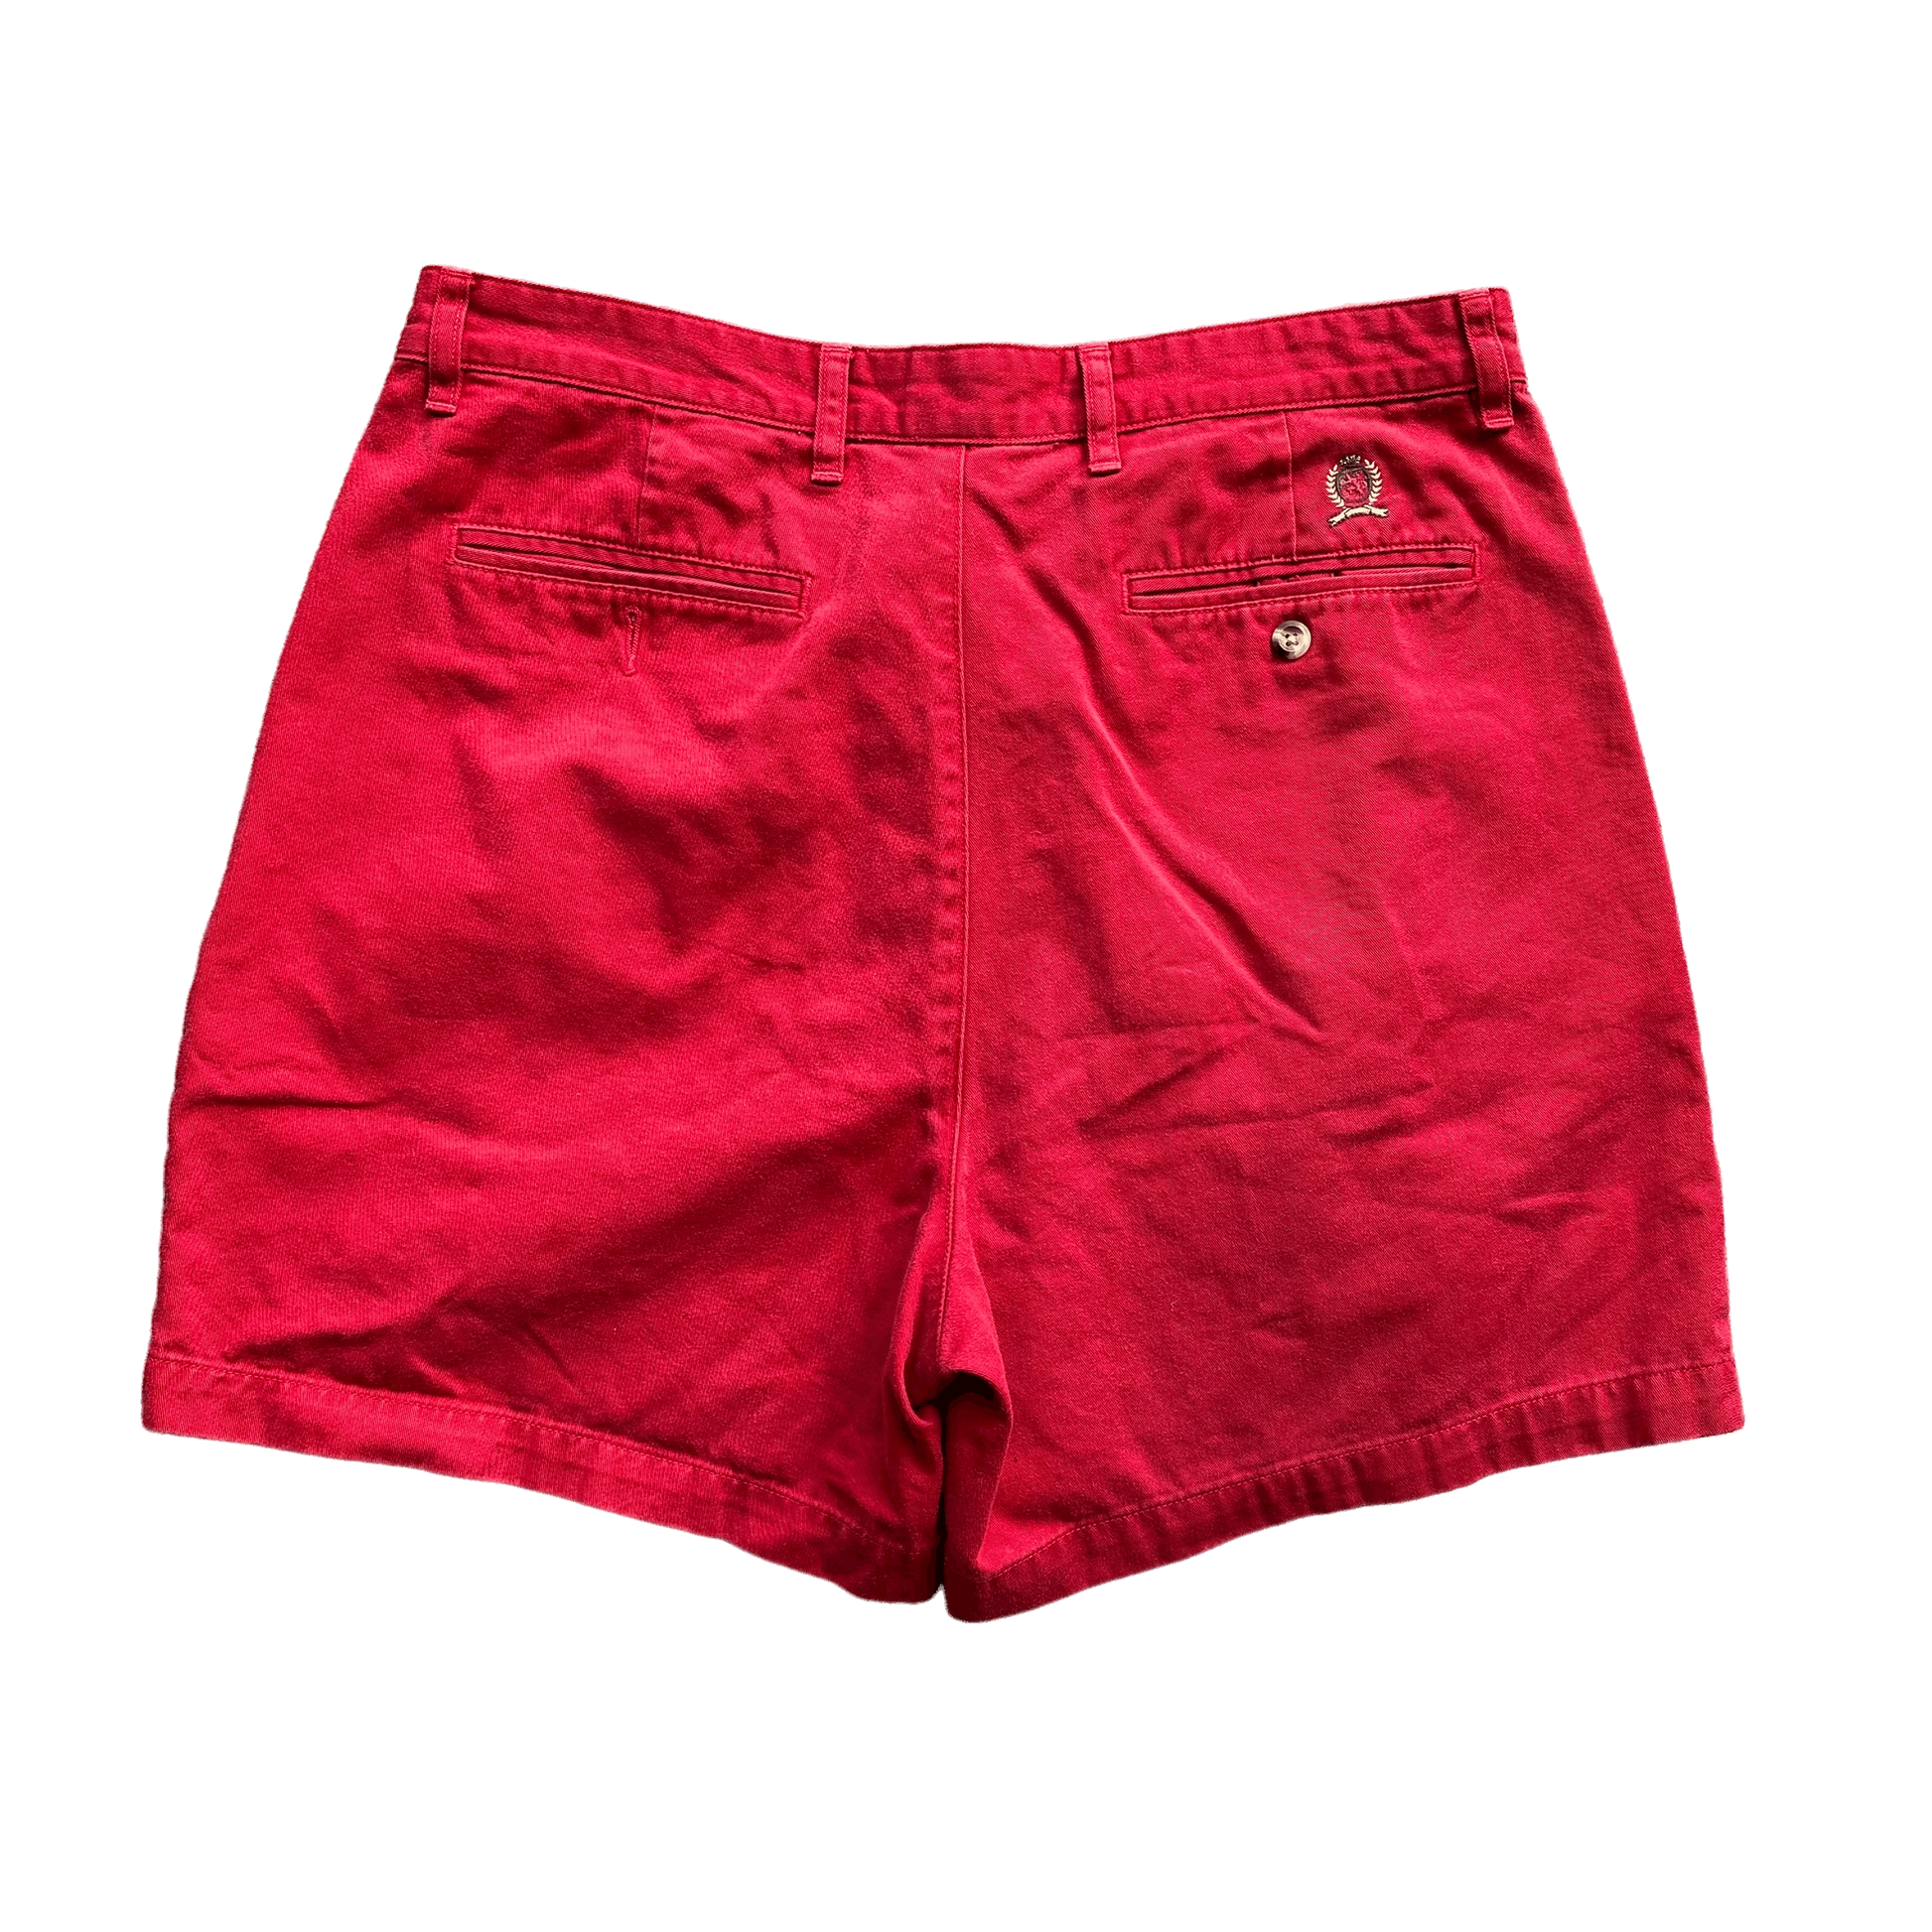 (36) 90s Vintage Red Tommy Hilfiger Shorts